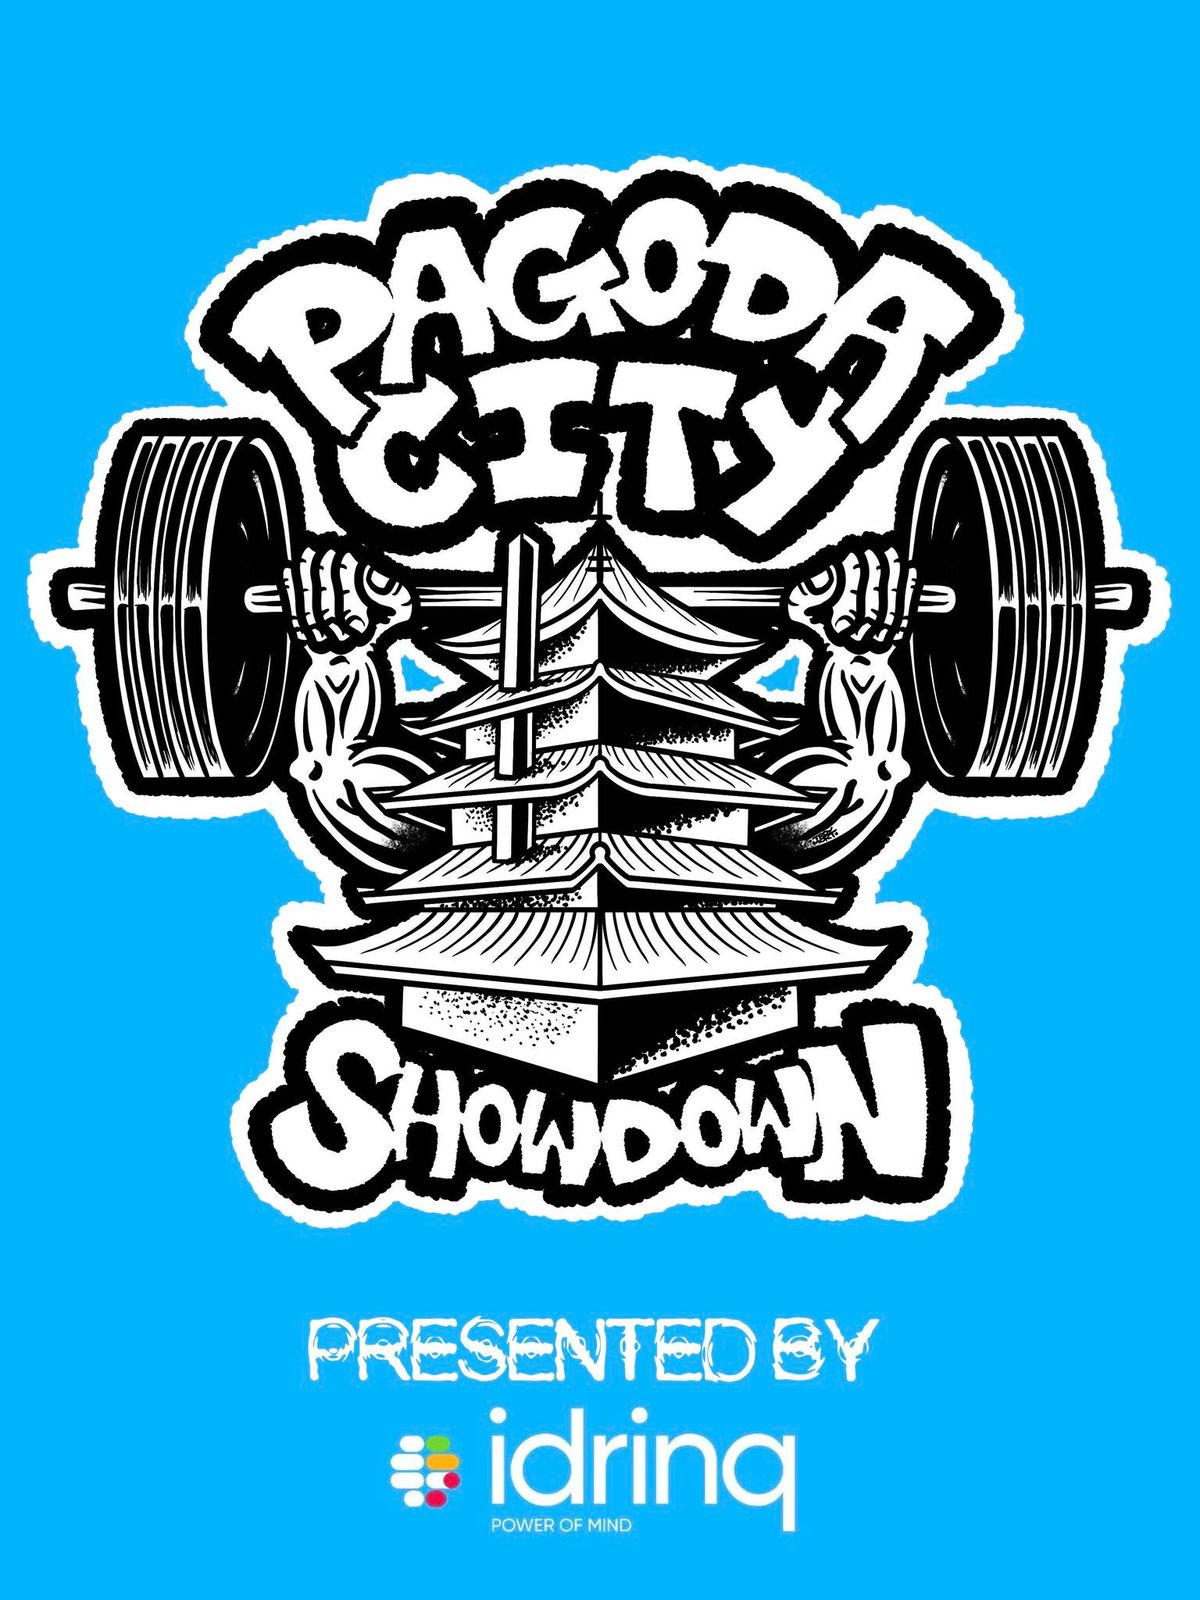 PAGODA CITY SHOWDOWN